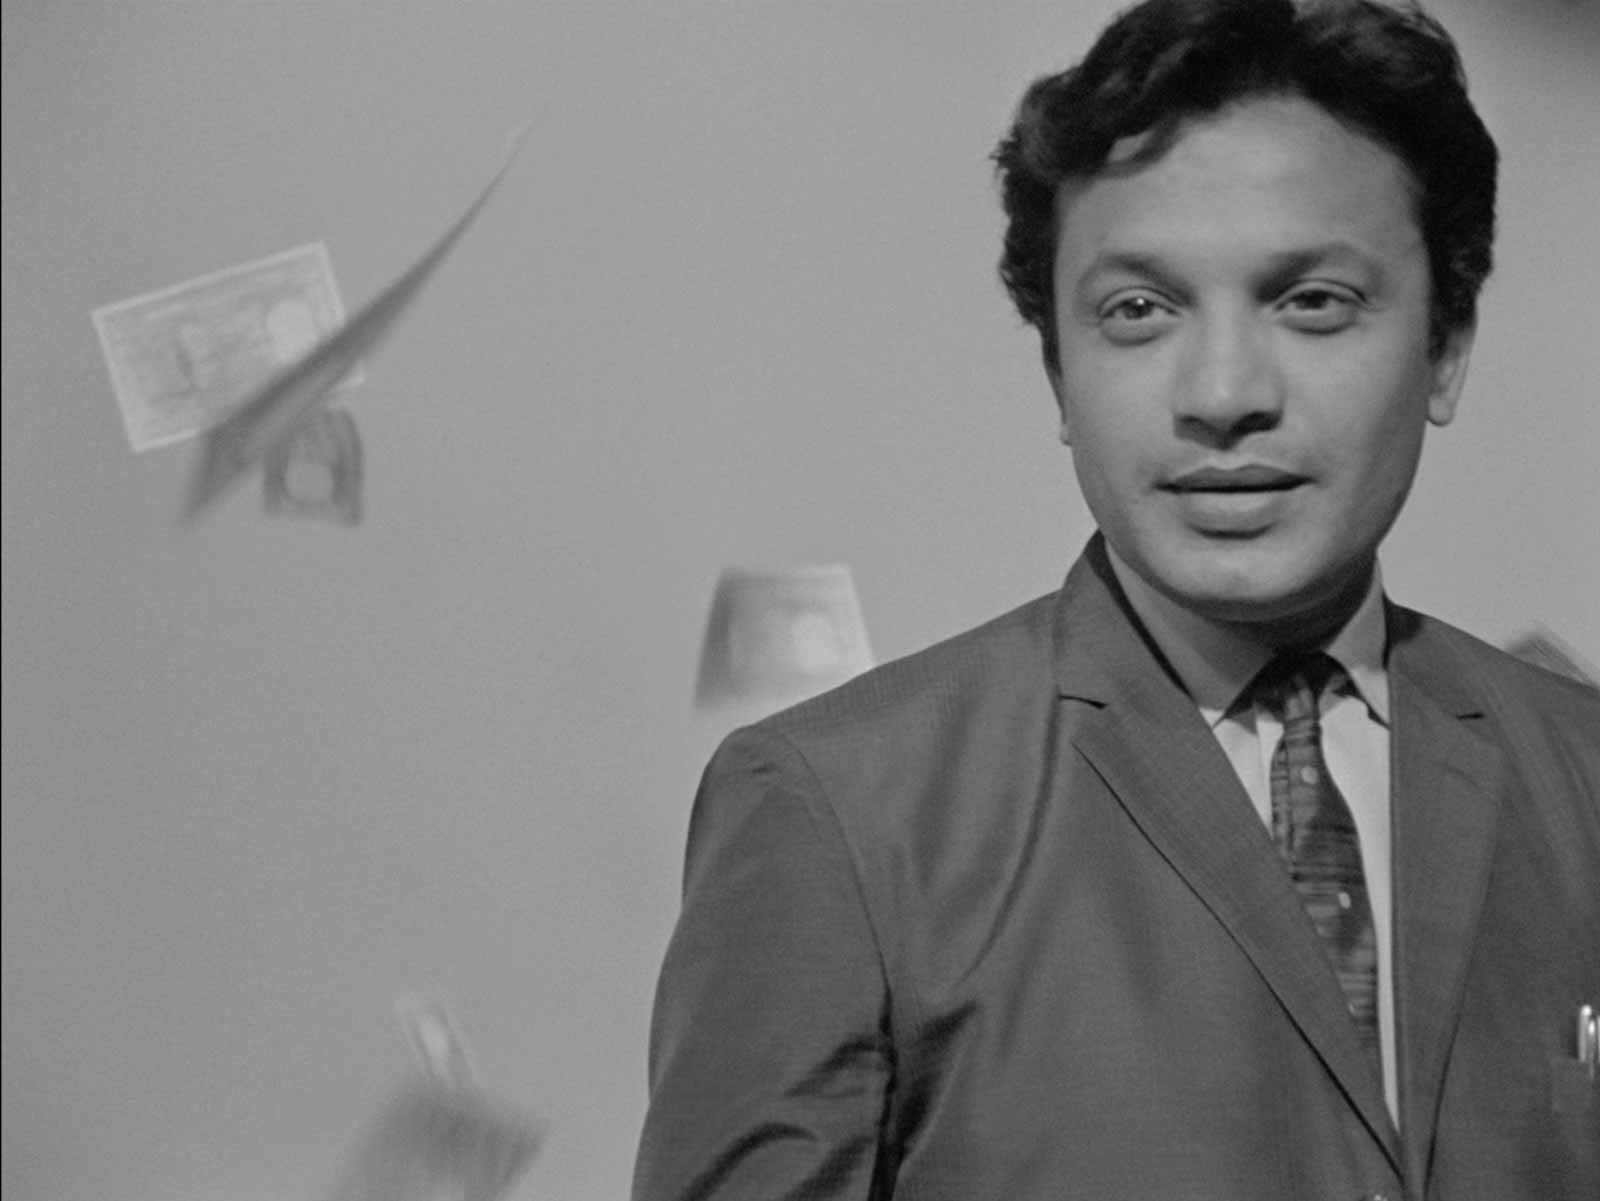 Uttam Kumar as Arindam Mukherjee in Satyajit Ray's The Hero, 1966